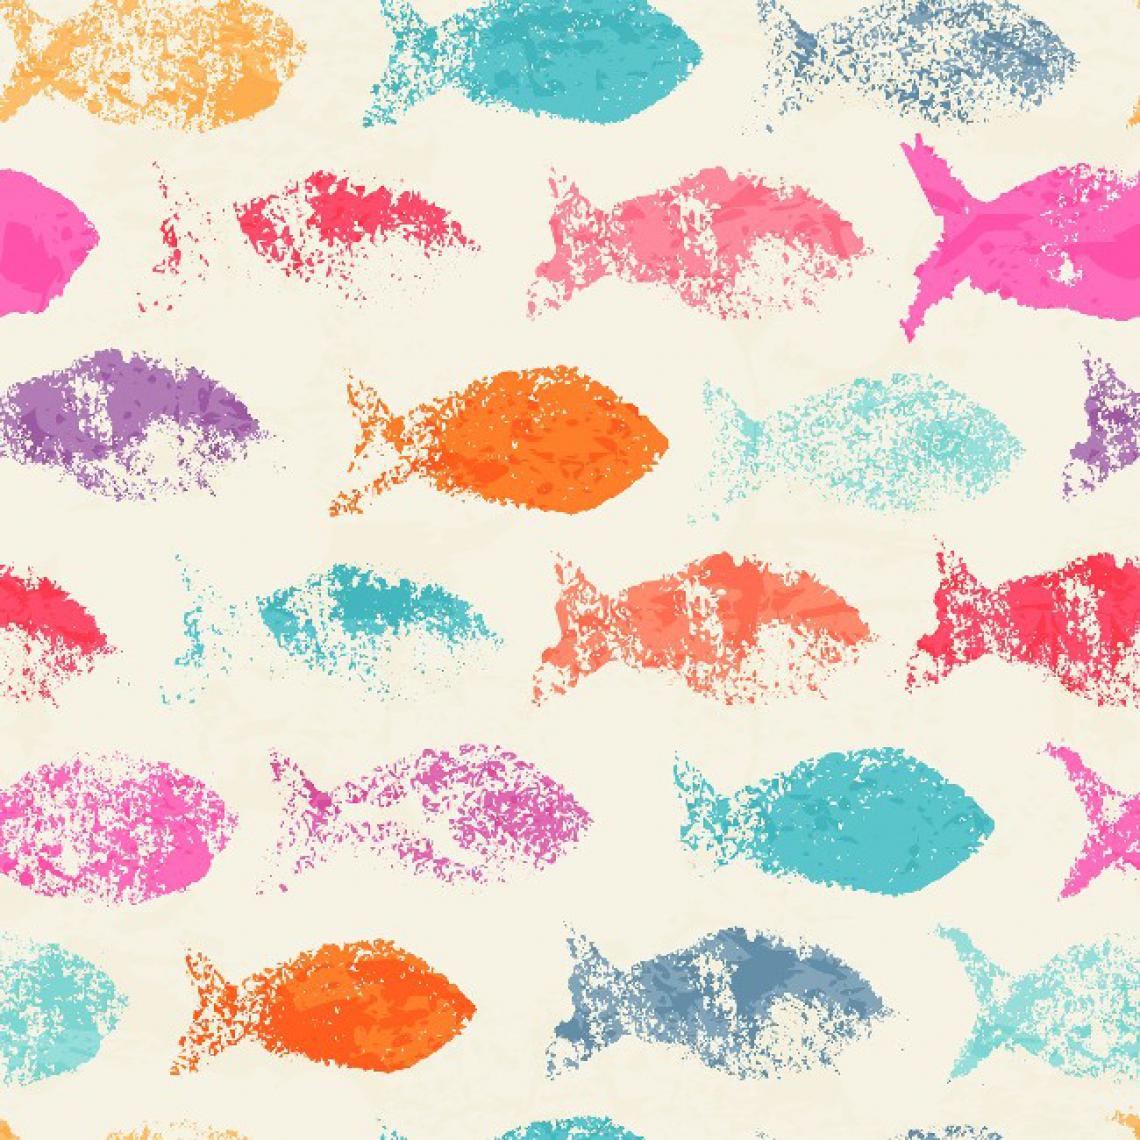 Homemania - HOMEMANIA Tapis Imprimé Colorful Fish - pour les enfants - Décoration de Maison - antidérapants - Pour Salon, séjour, chambre à coucher - Multicolore en Polyester, Coton, 100 x 150 cm - Tapis